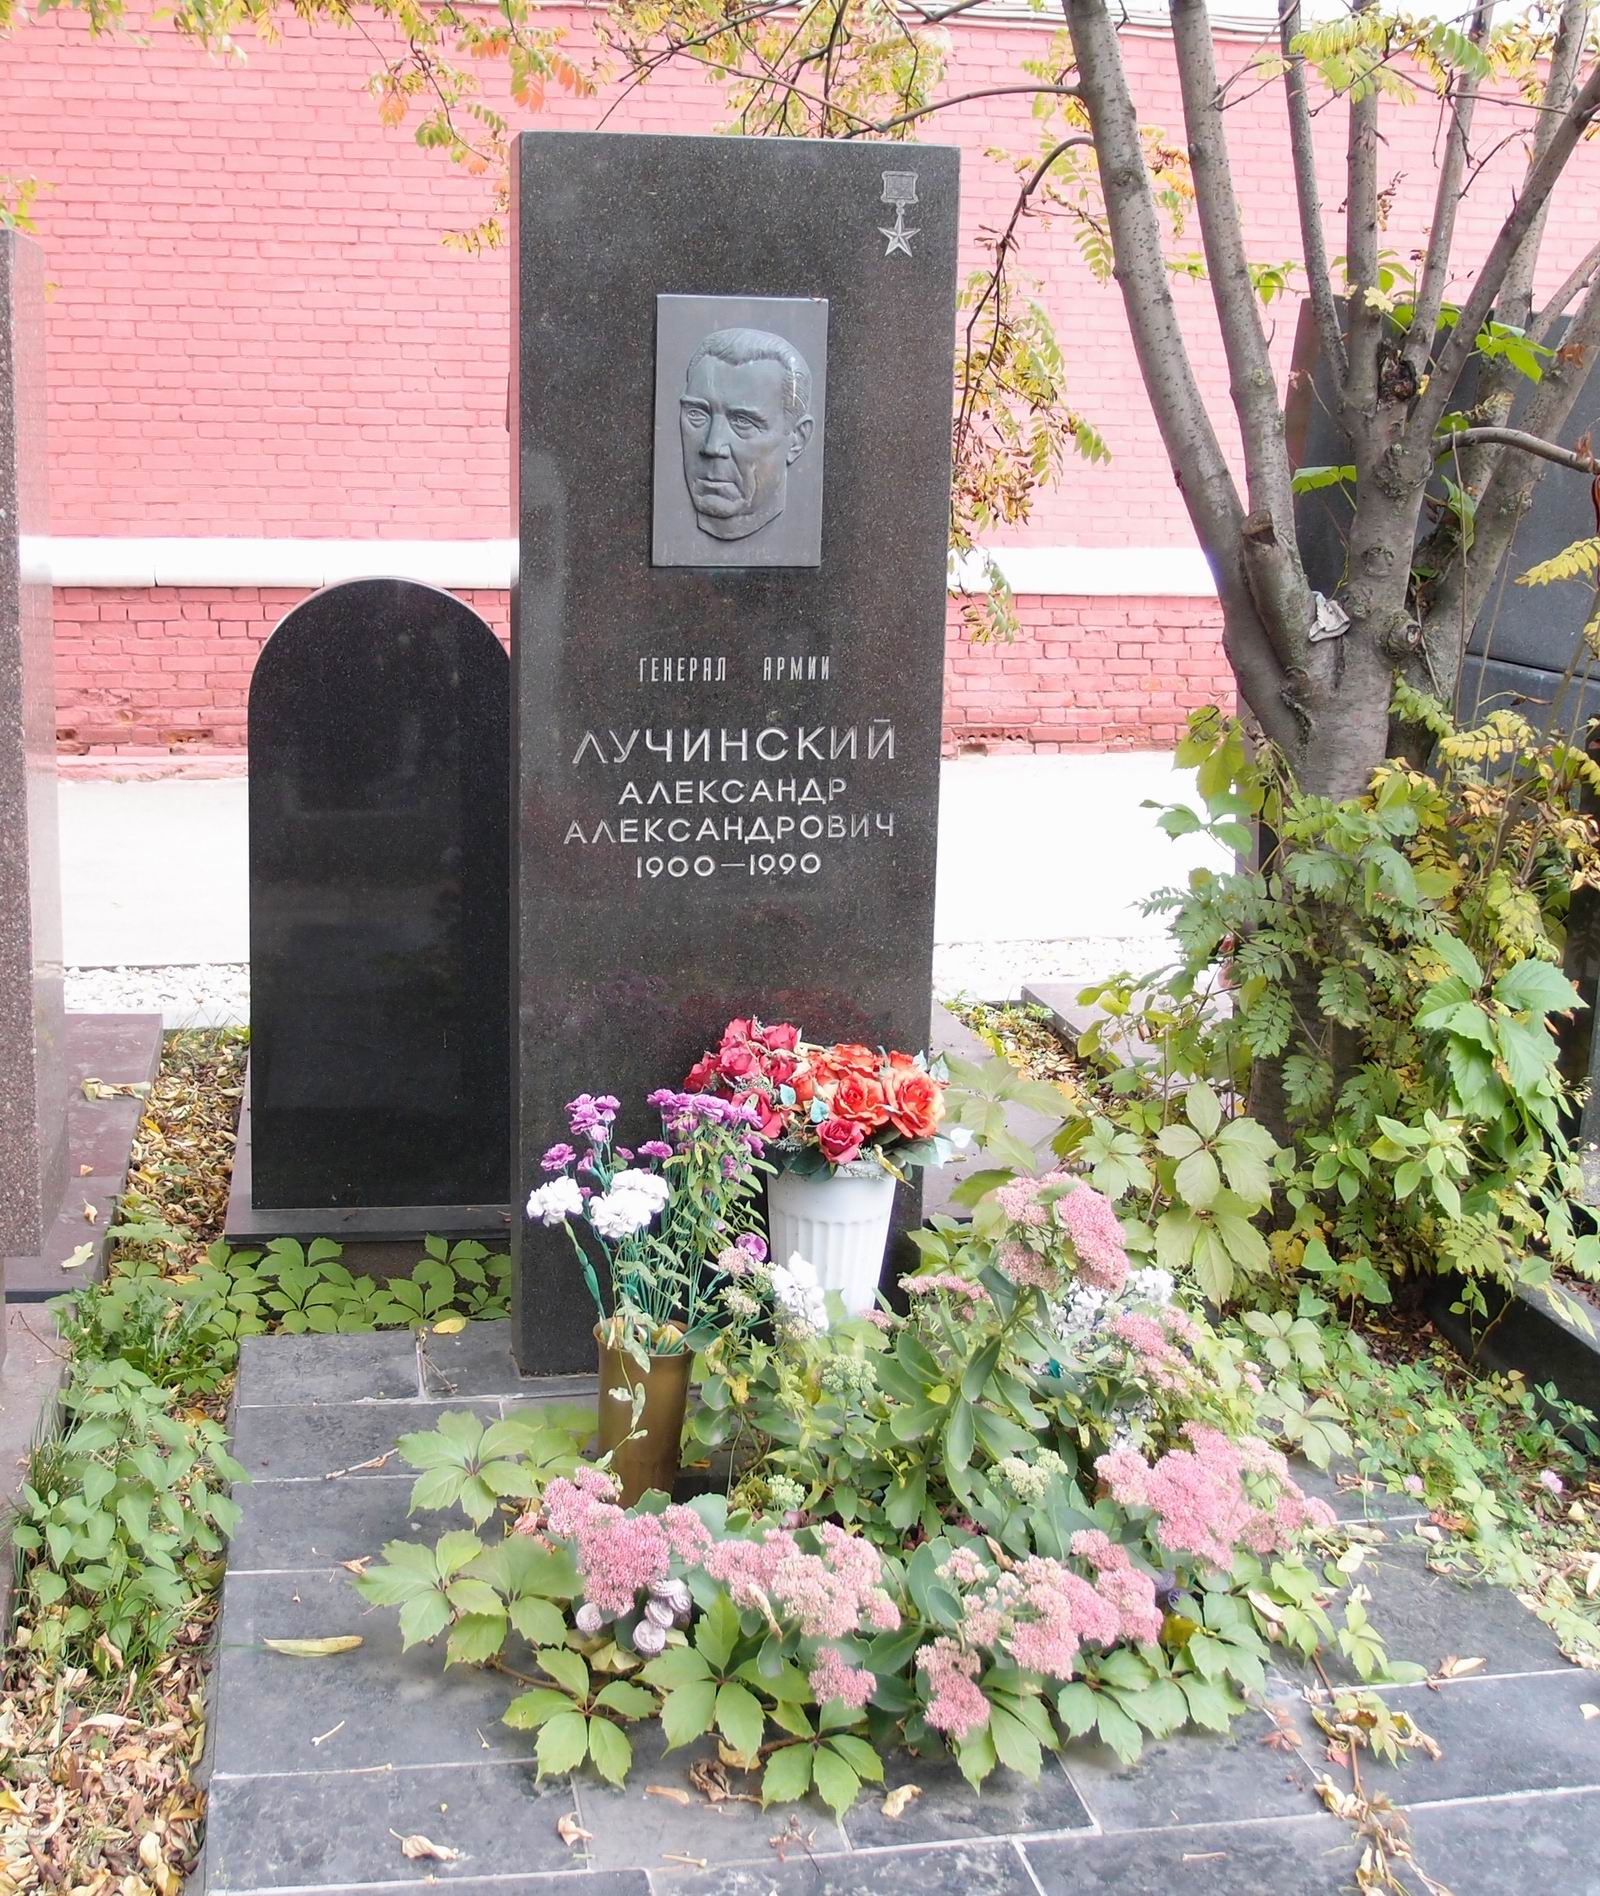 Памятник на могиле Лучинского А.А. (1900-1990), ск. А.Газалиев, арх. Б.Шехура, на Новодевичьем кладбище (11-2-8).